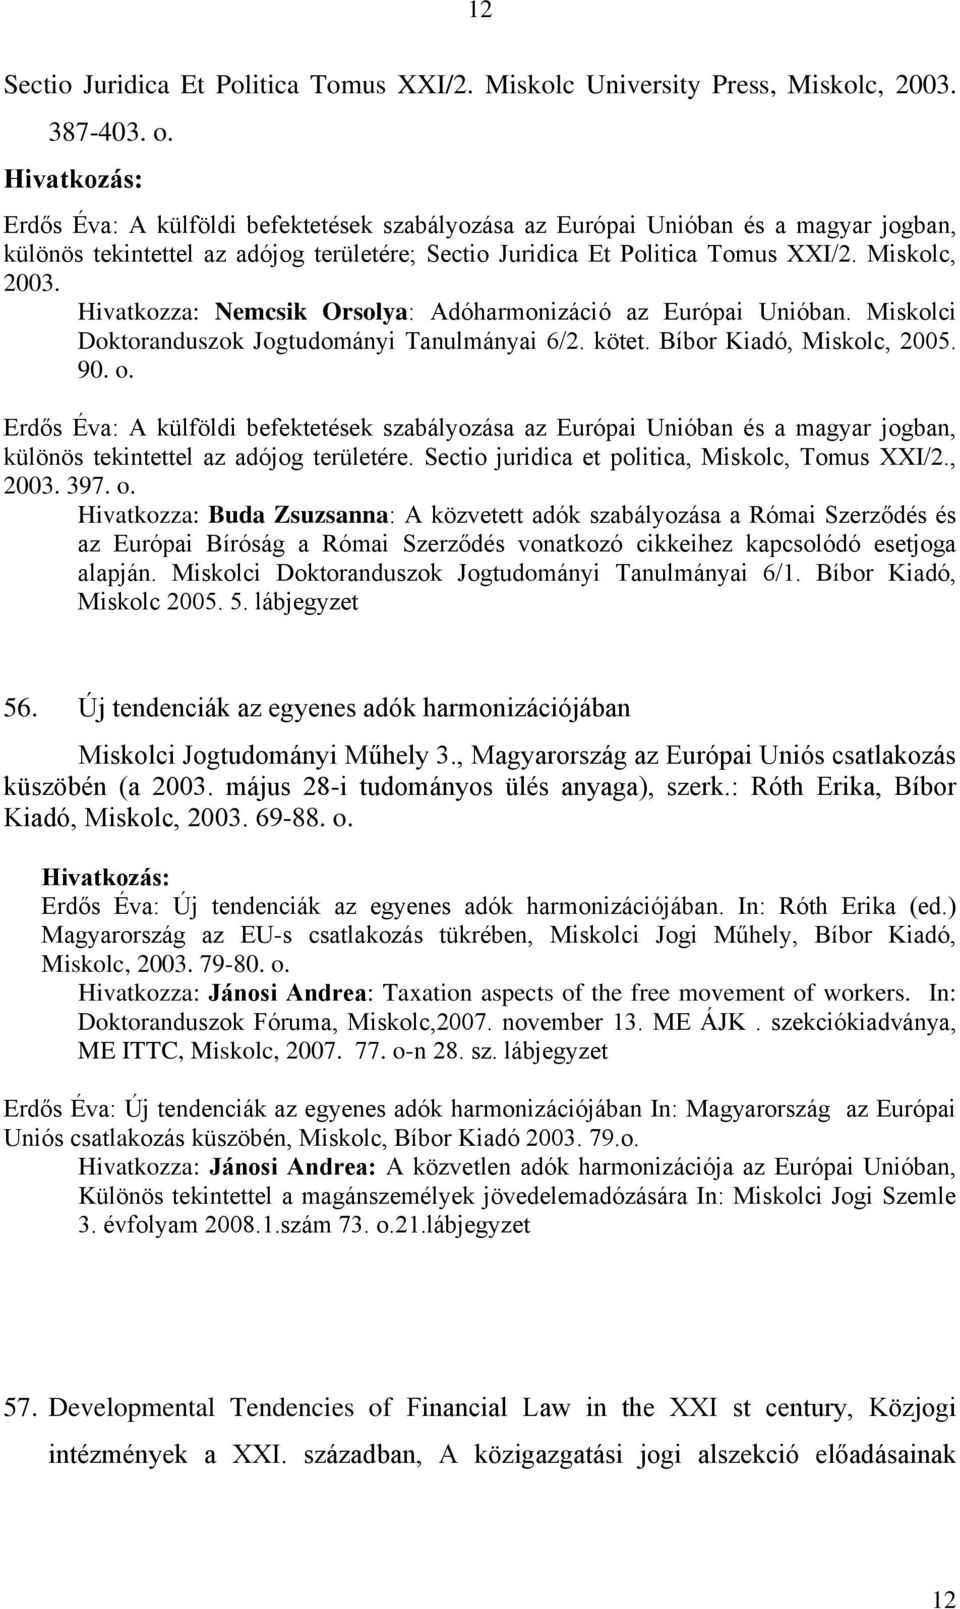 Hivatkozza: Nemcsik Orsolya: Adóharmonizáció az Európai Unióban. Miskolci Doktoranduszok Jogtudományi Tanulmányai 6/2. kötet. Bíbor Kiadó, Miskolc, 2005. 90. o.